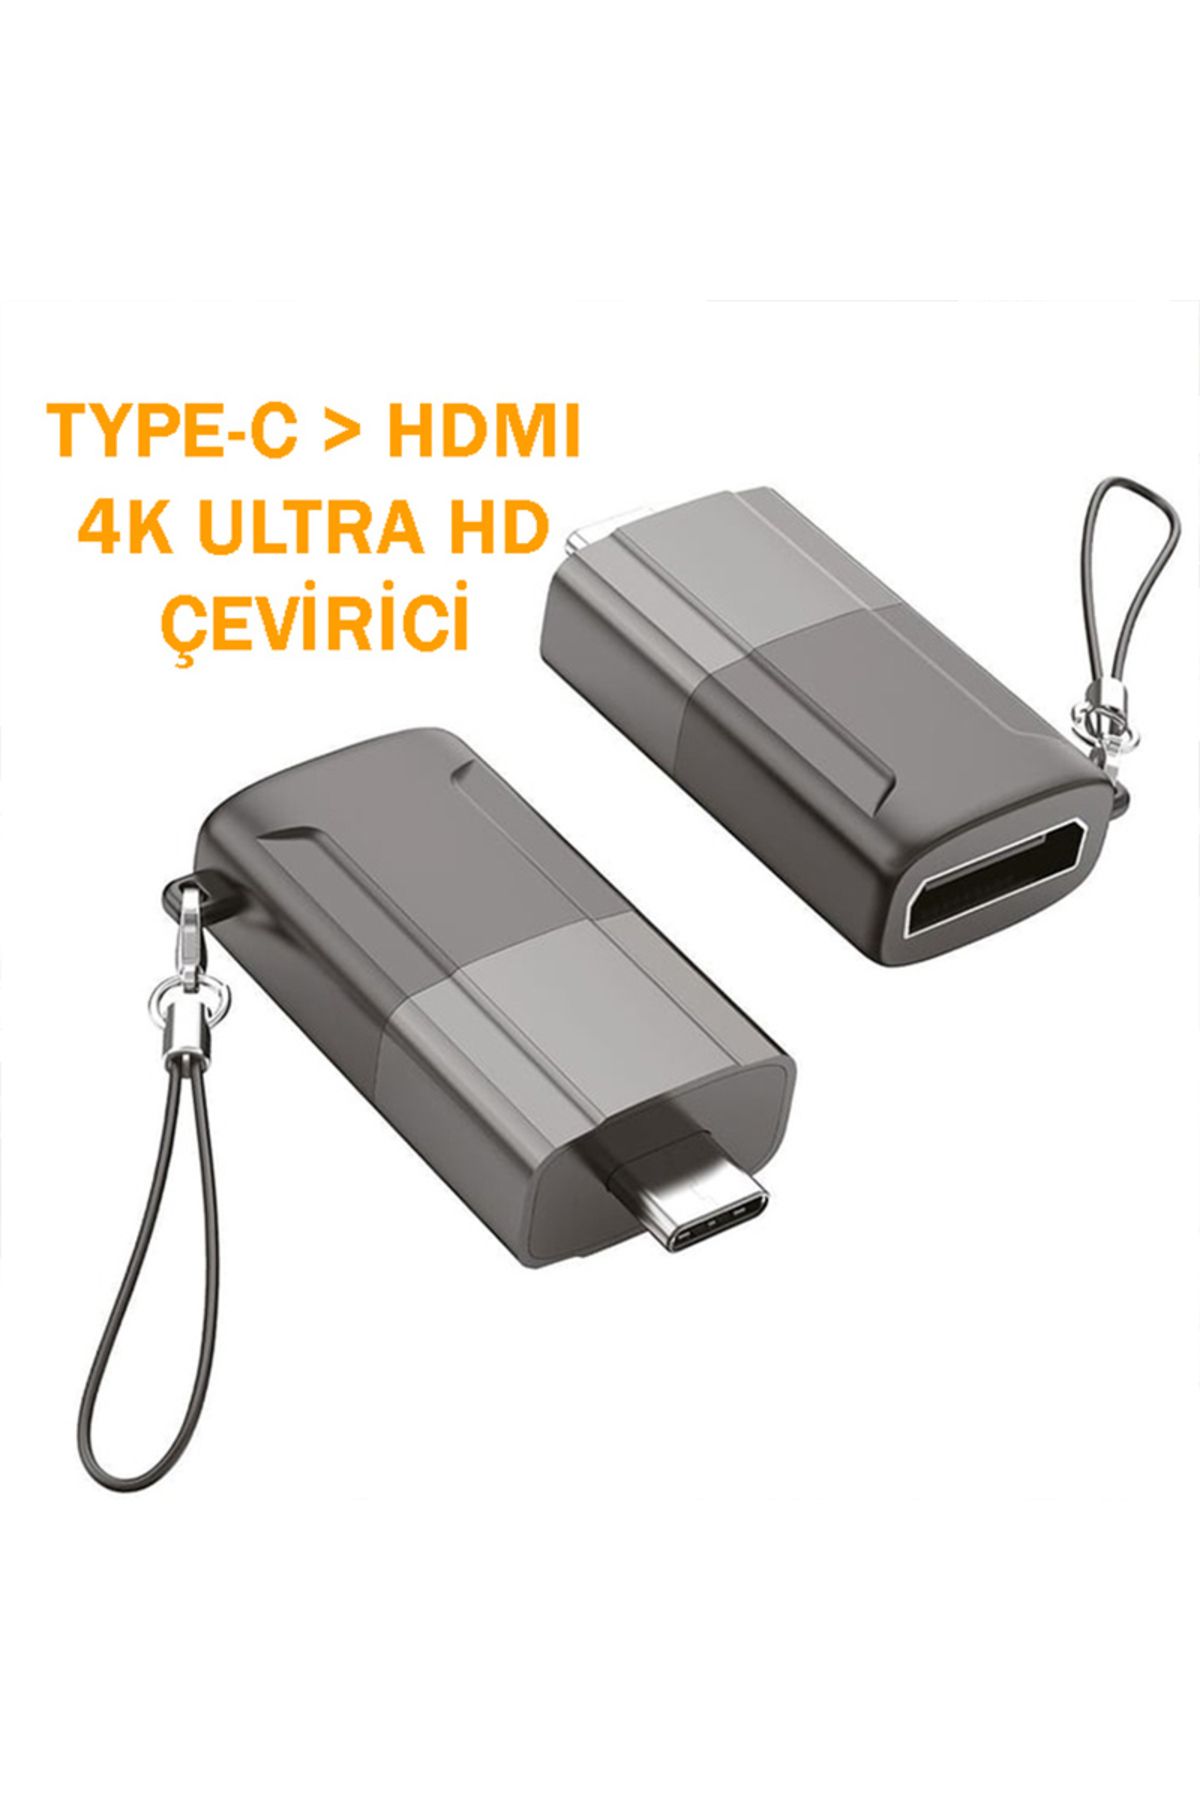 Dexmon Yüksek Kalite Type-c To HDMI 4K Ultra HD Çeviriçi Dönüştürücü Telefon Tablet Macbook Laptop Uyumlu